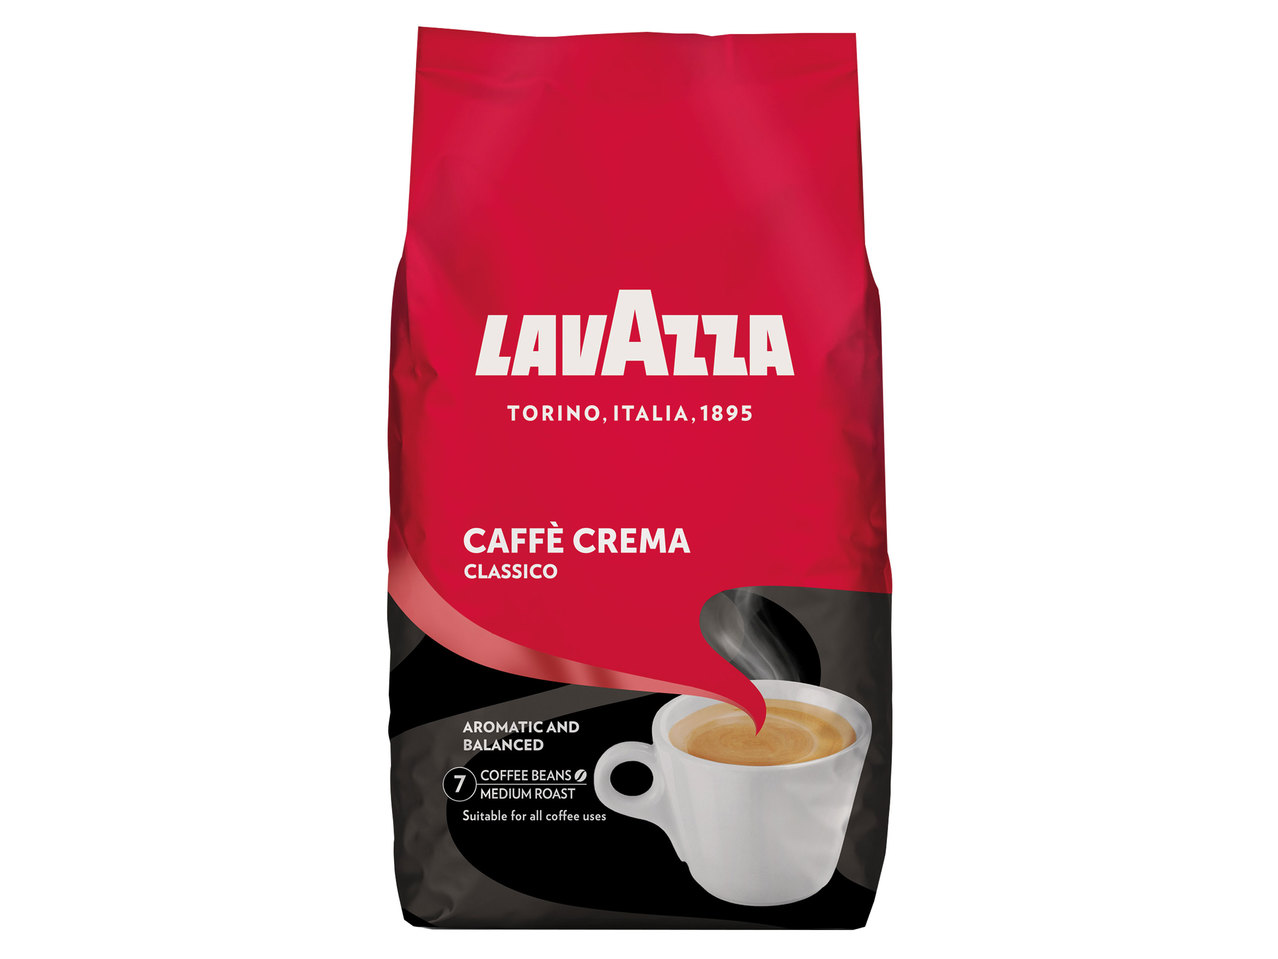 LAVAZZA Caffè Crema Classico